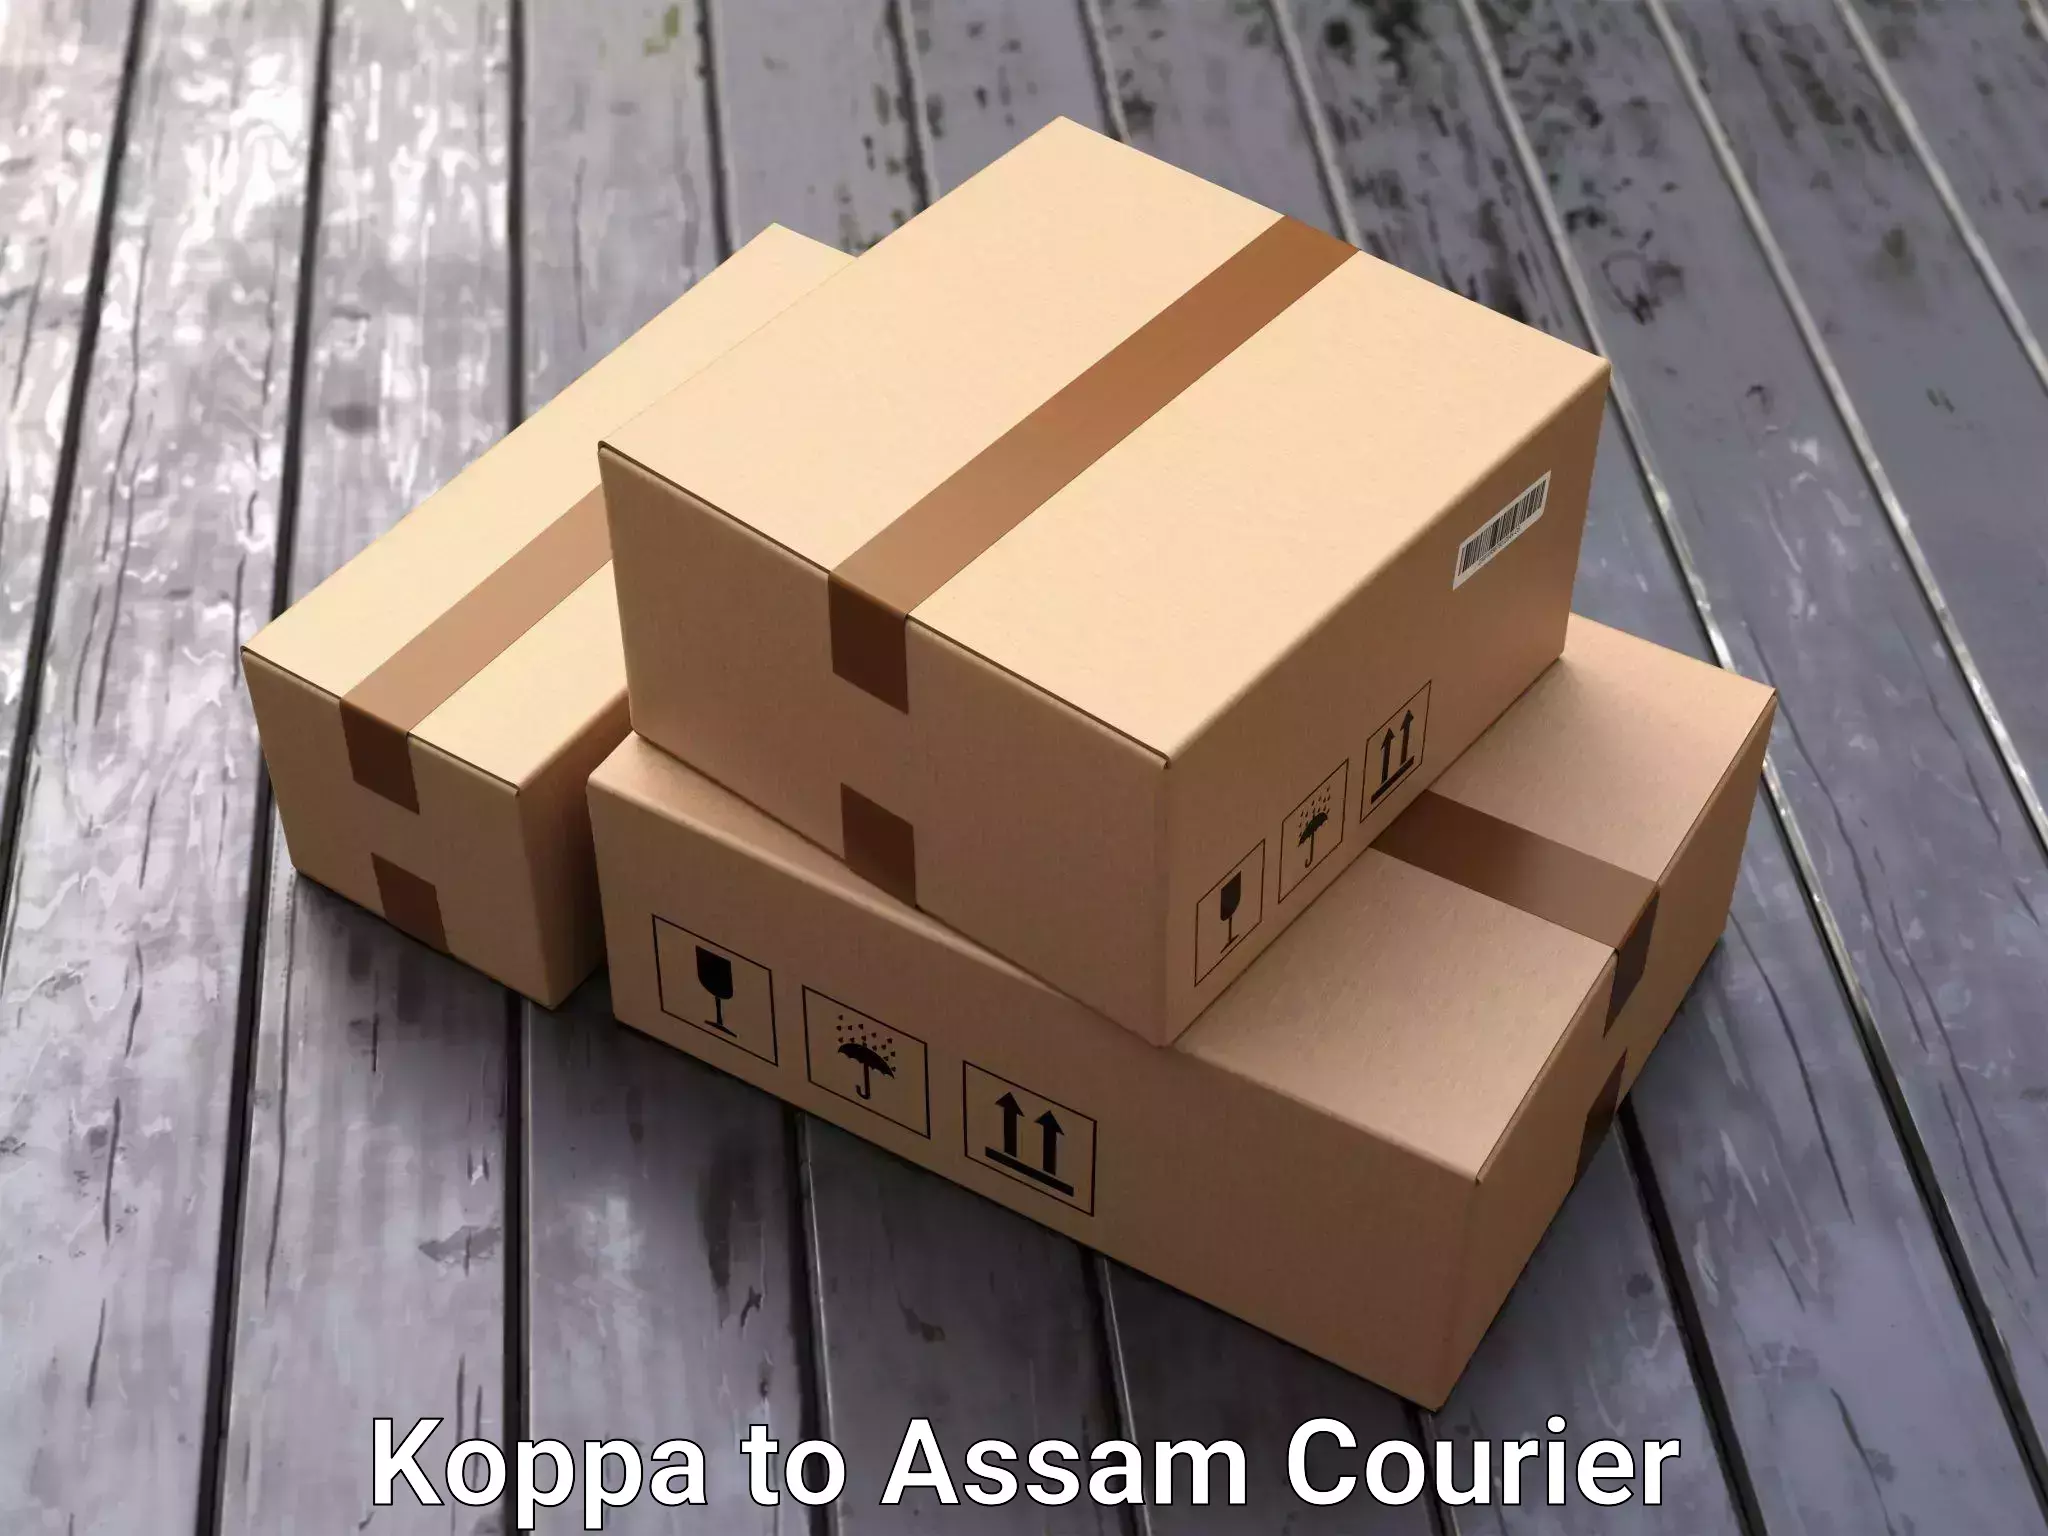 Furniture moving experts Koppa to Dotma